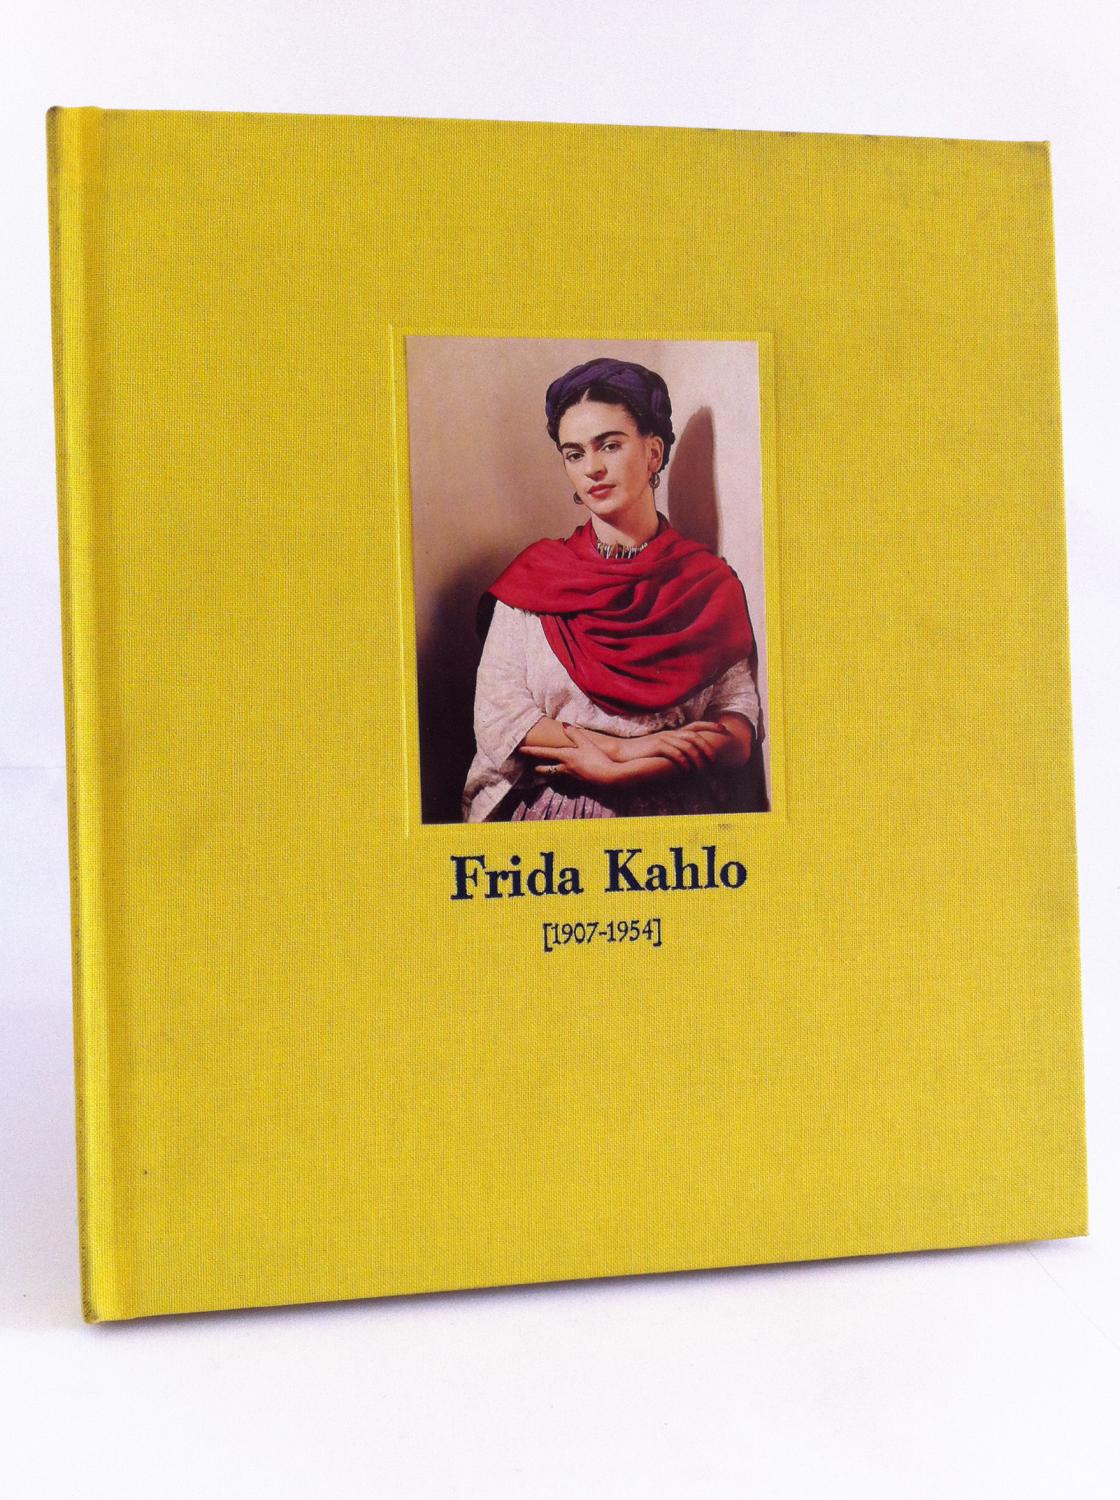 Frida Kahlo: [1907-1954] : Salas Pablo Ruiz Picasso, Paseo de Recoletos 22 : Madrid, 30 de abril-15 de junio de 1985 (Spanish Edition)